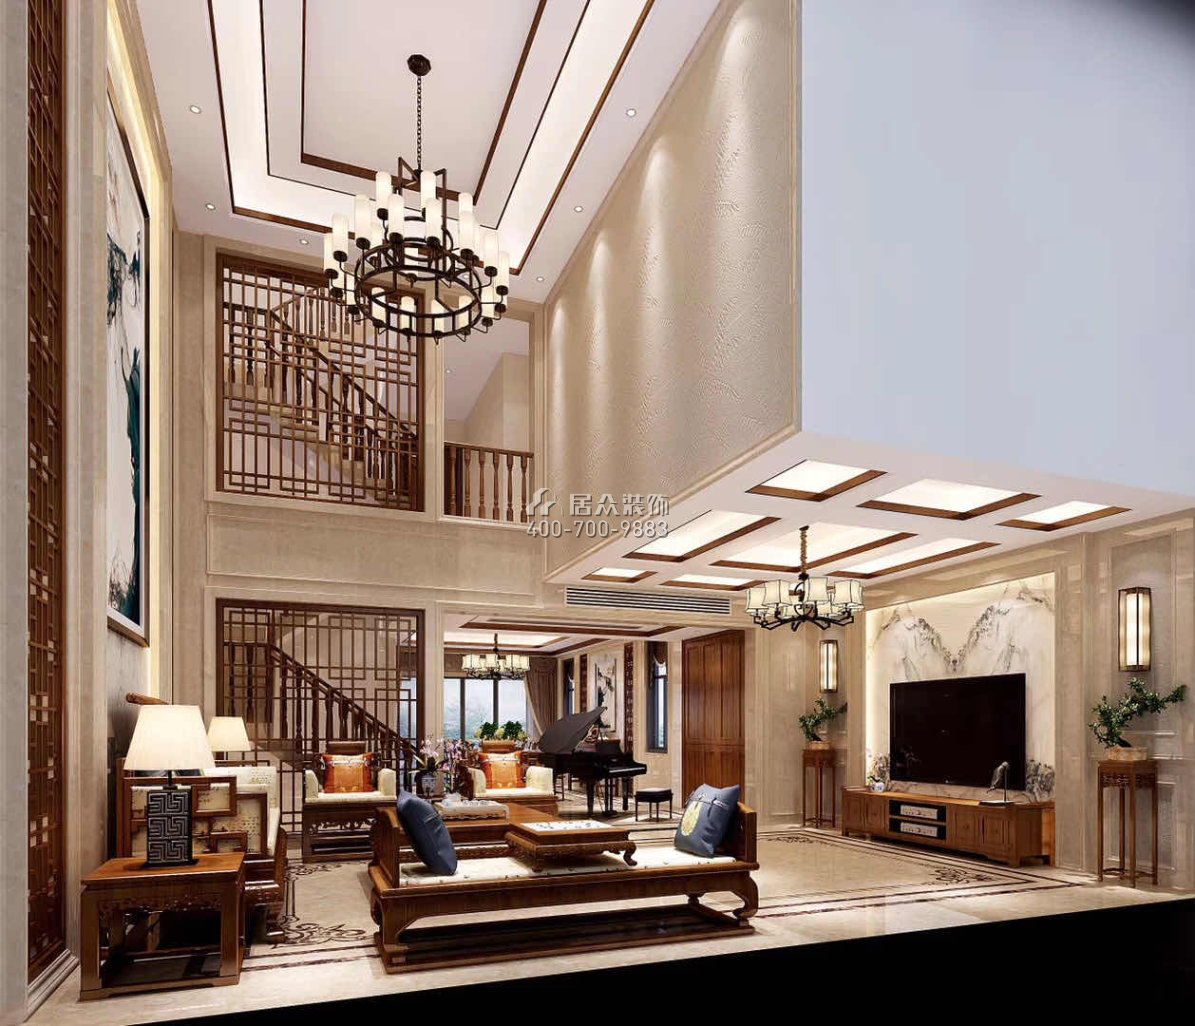 華桂園330平方米中式風格別墅戶型客廳裝修效果圖